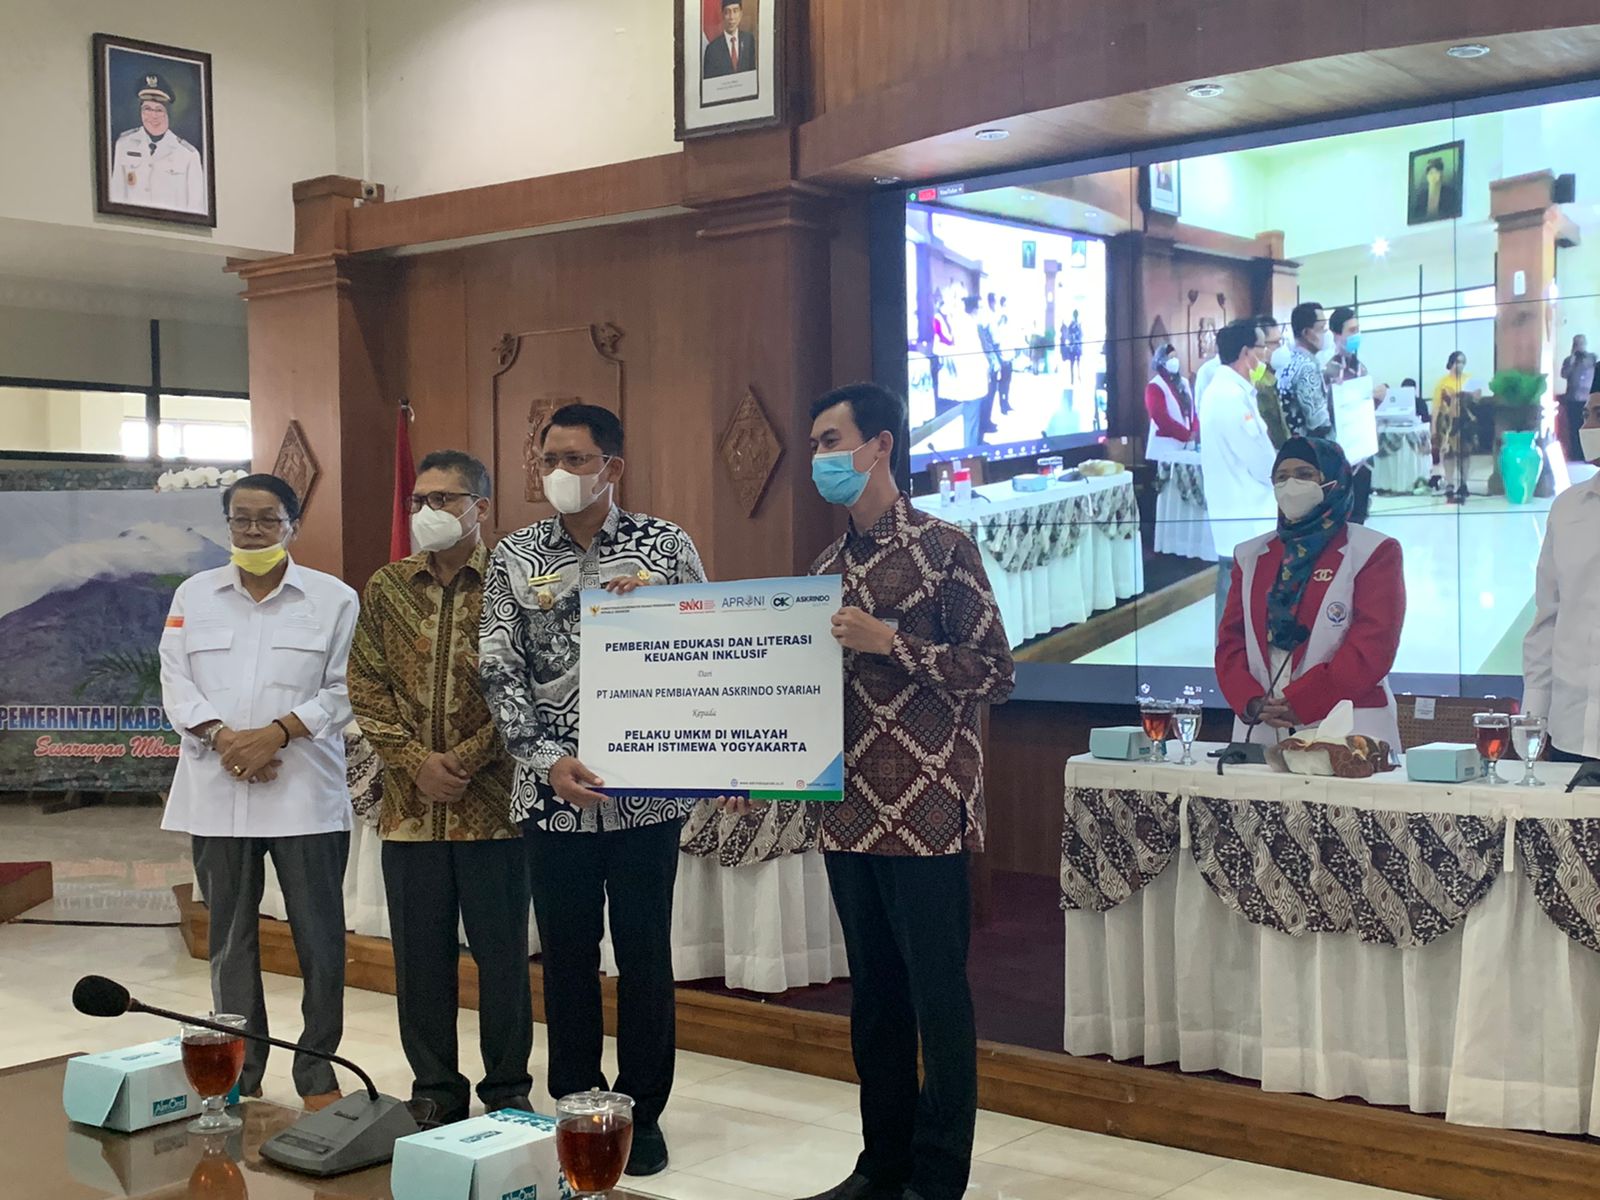 Askrindo Syariah Mengikuti Seminar Internasional & Halal Expo di Yogyakarta